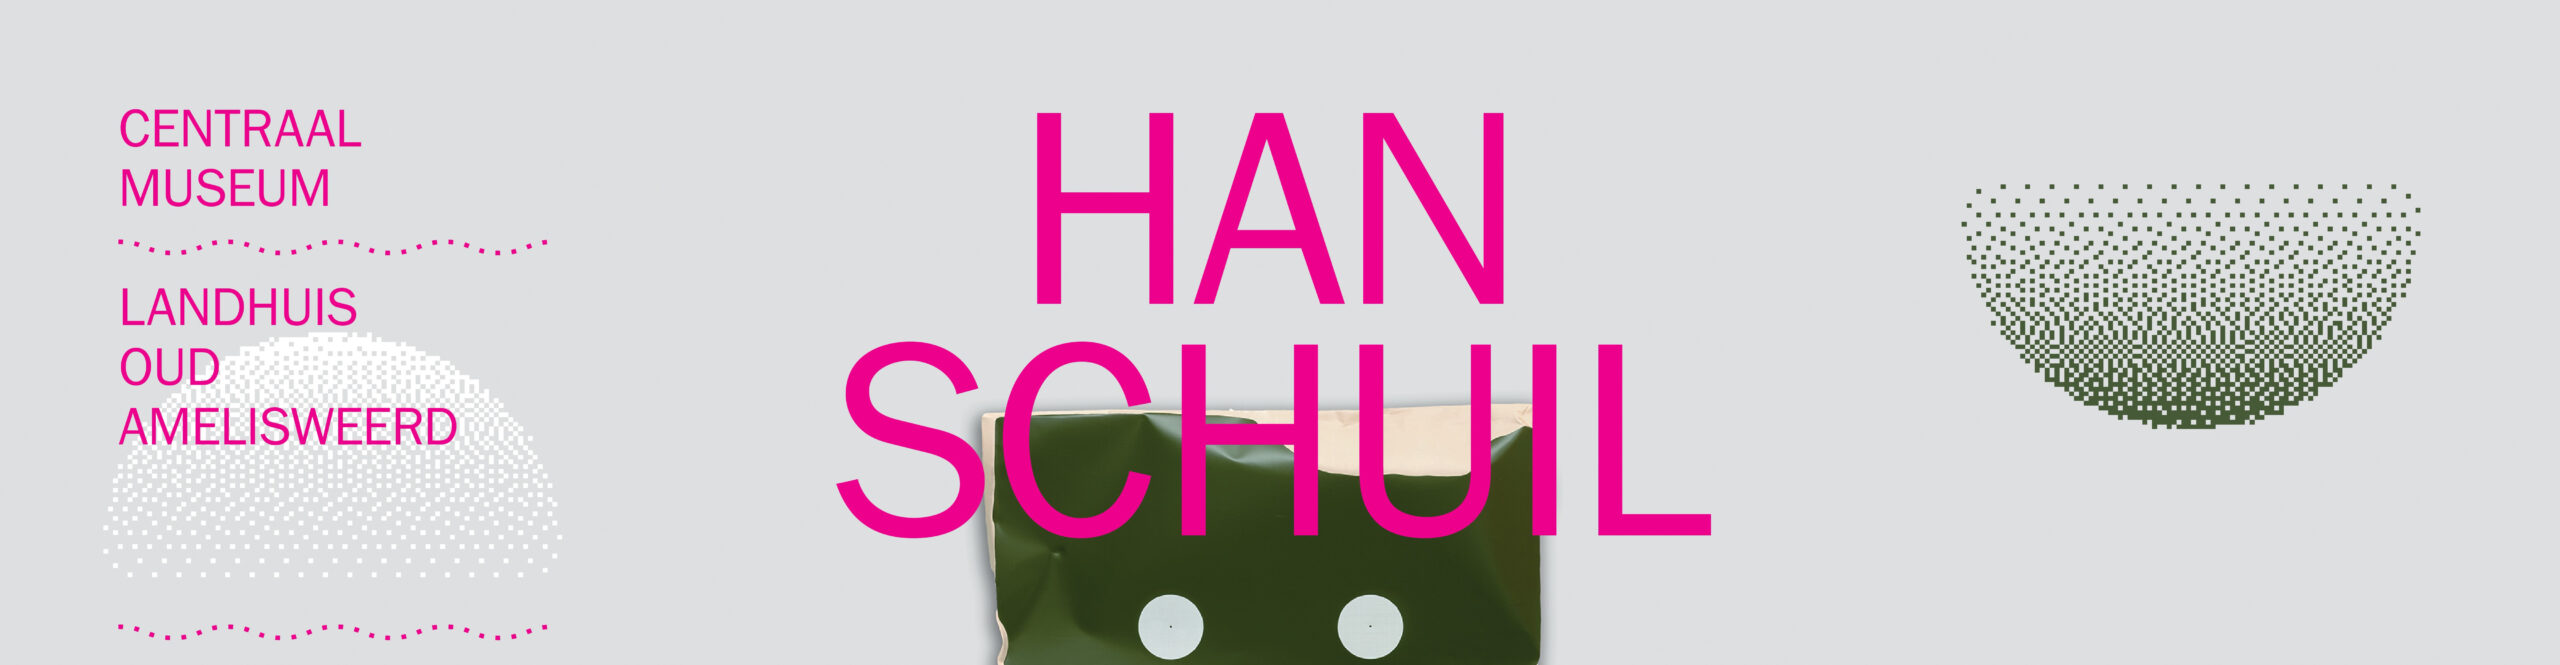 Landhuis Oud Amelisweerd / Han Schuil – SOLO